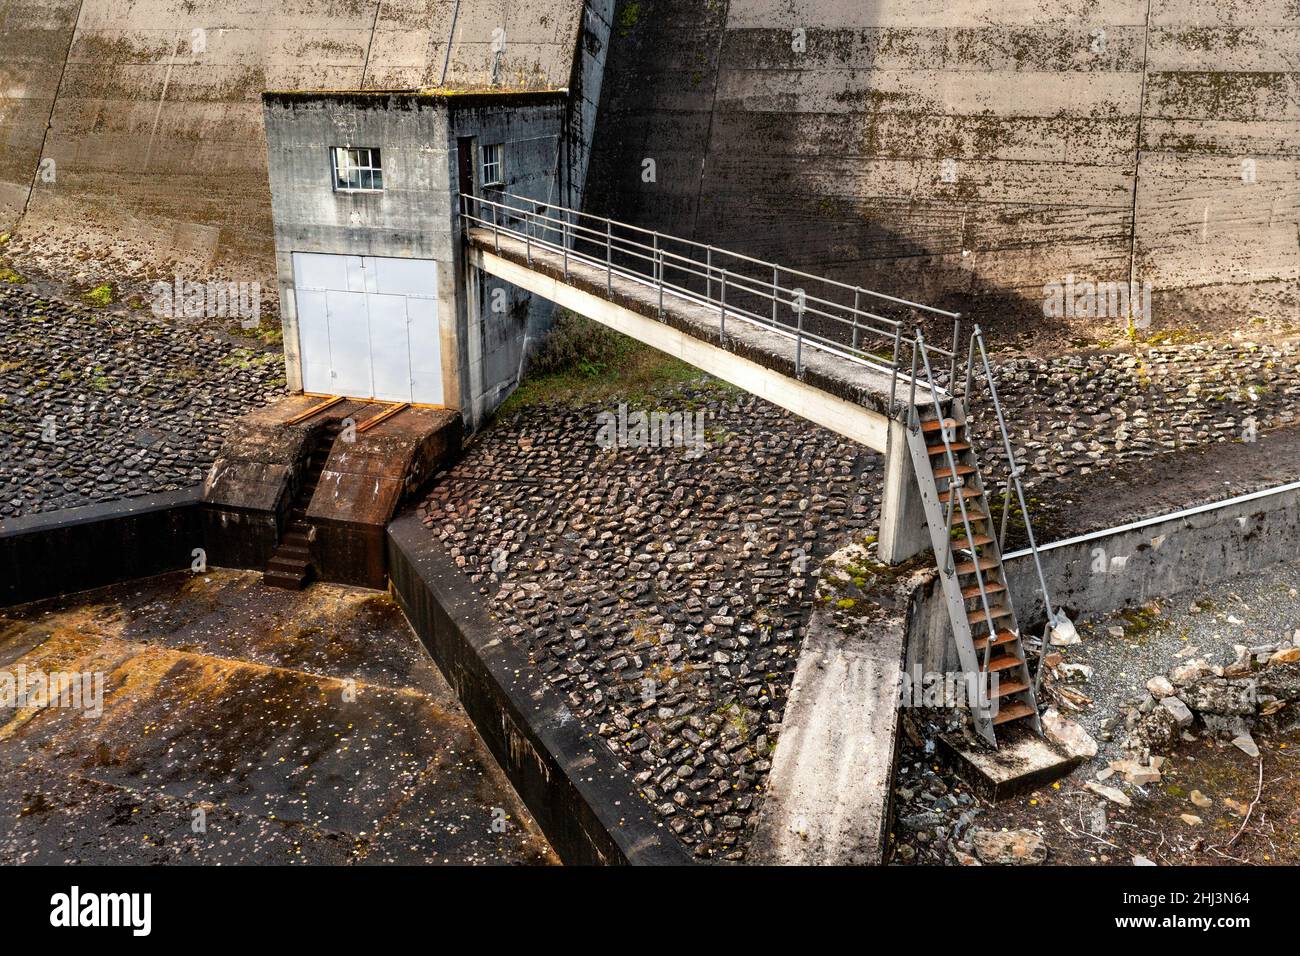 Imágenes de las contrafuertes y el vertedero de la presa Errochty Hydro Electric en Perthshire, Escocia. Parte del Plan Hidráulico Tummel Garry. Foto de stock